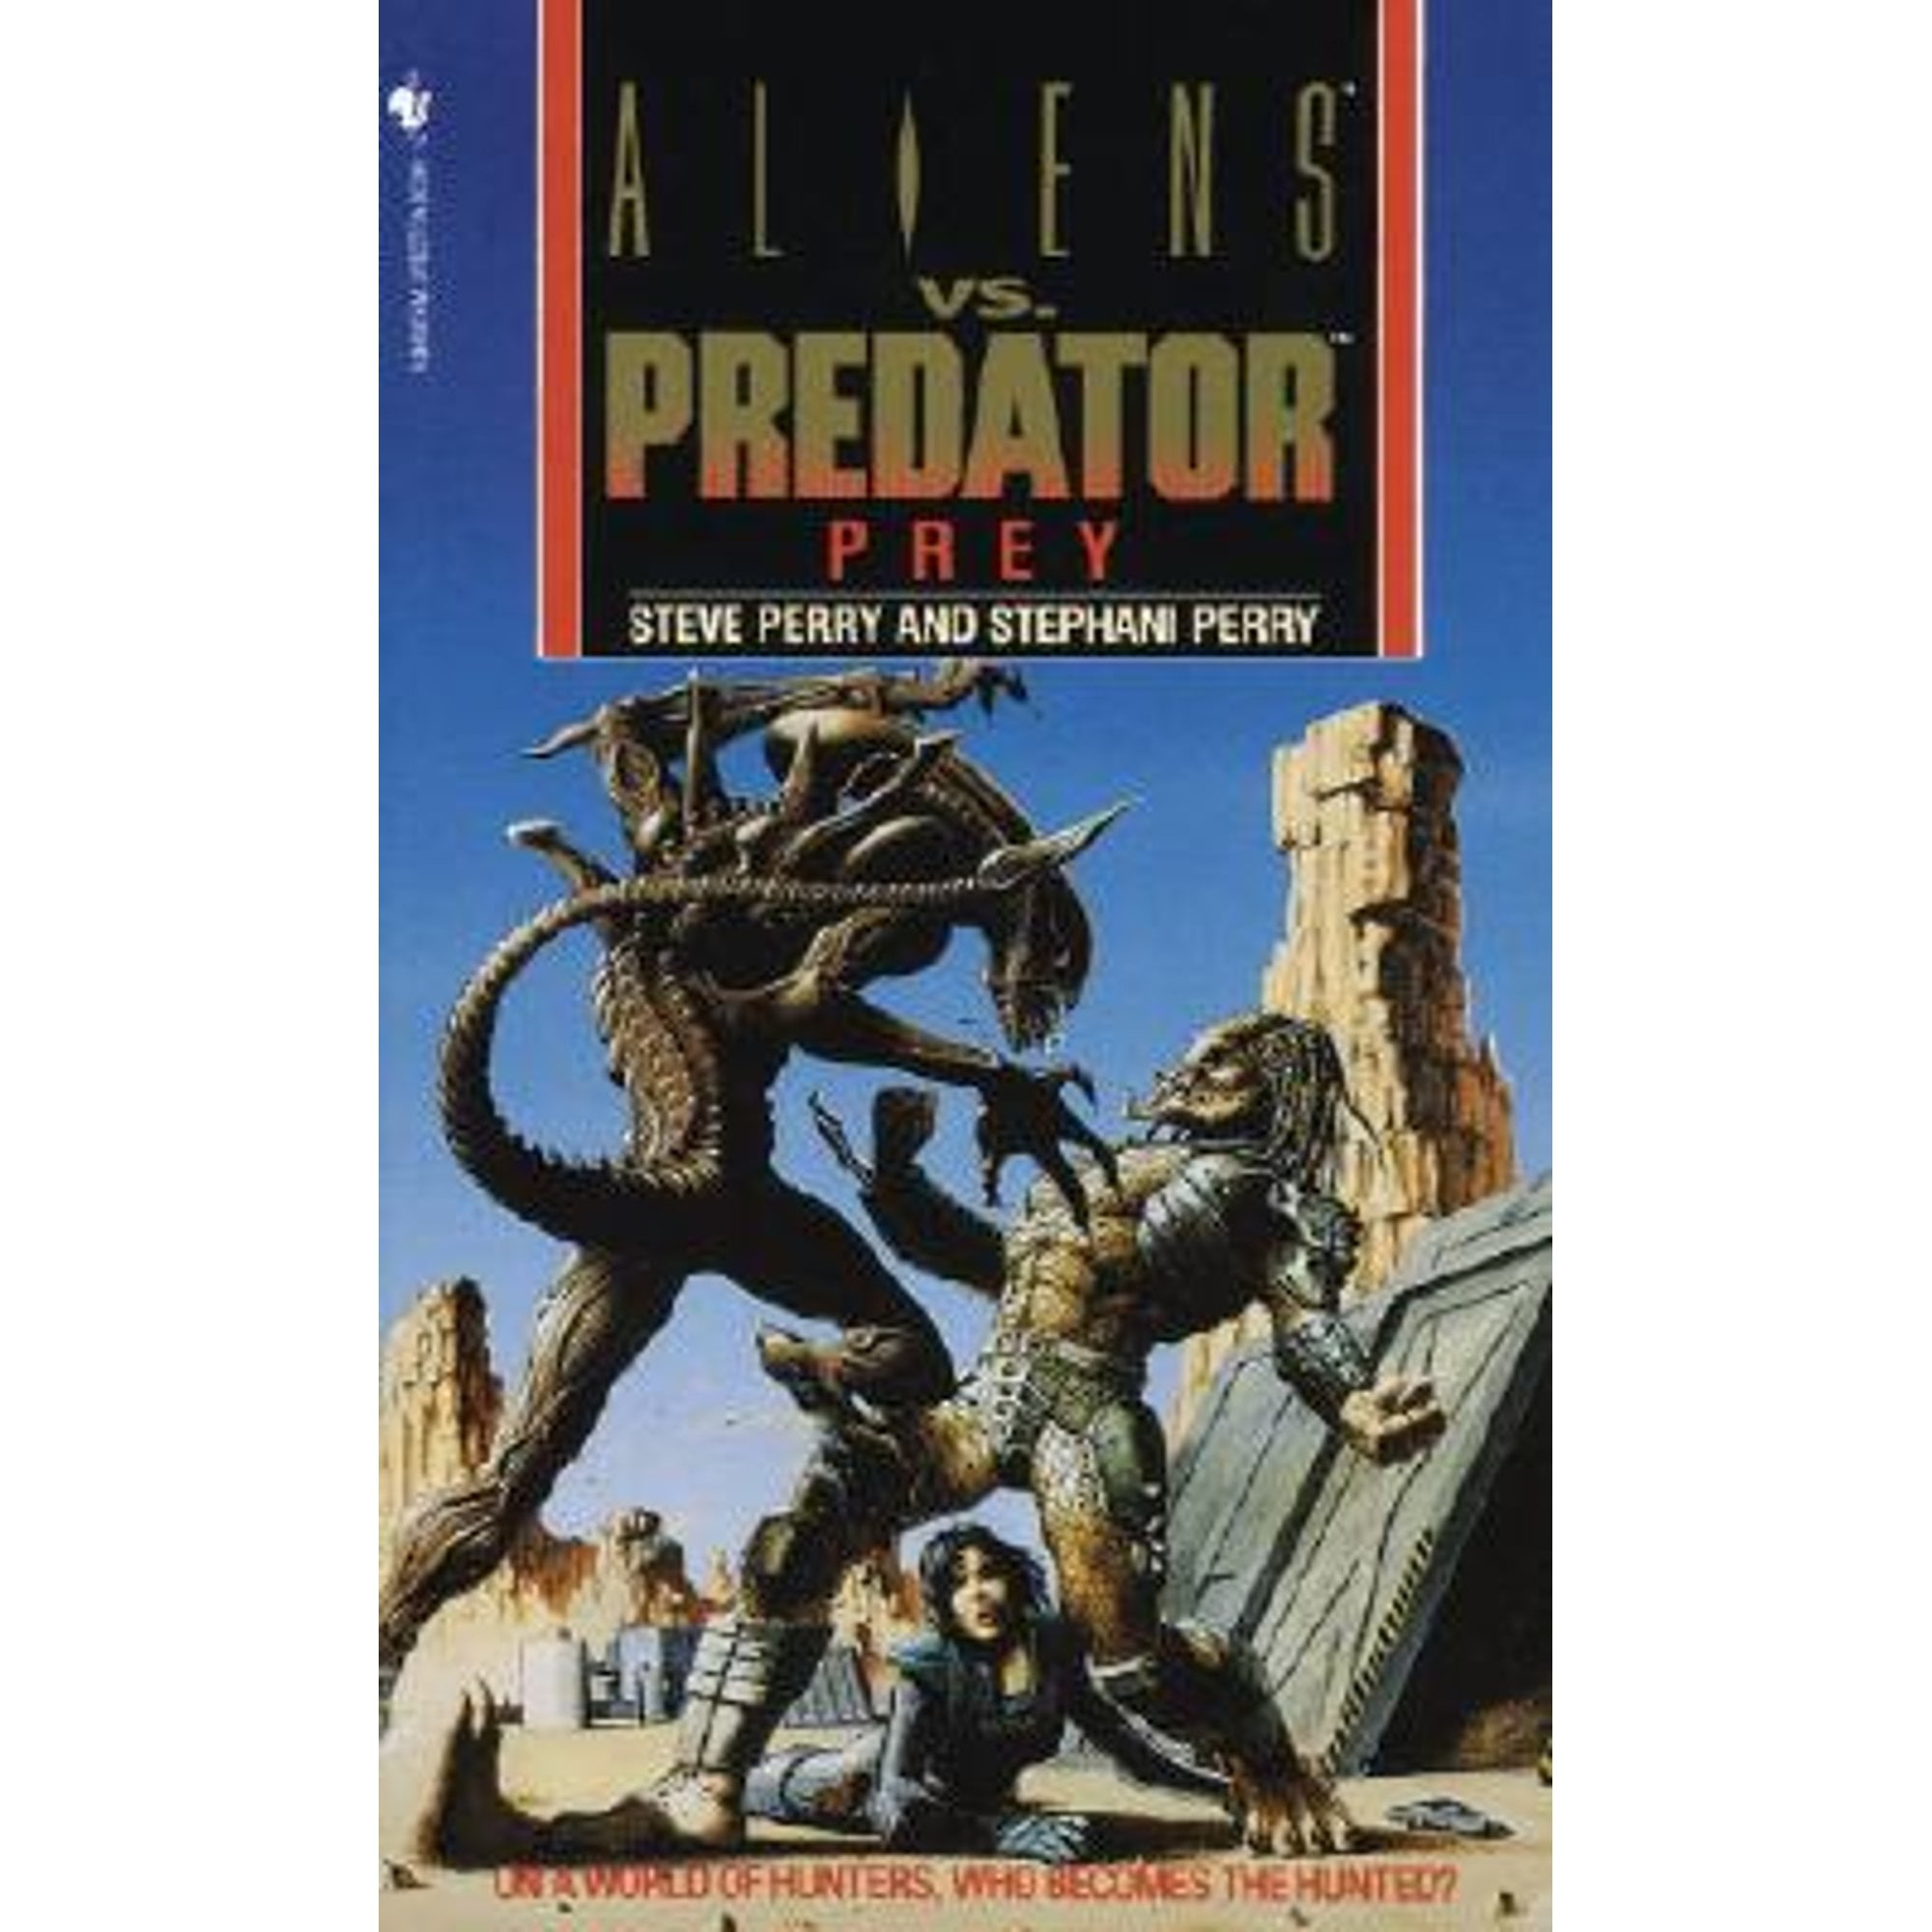 Leben und Tod: Alien vs. Predator: 9783959810531 - AbeBooks